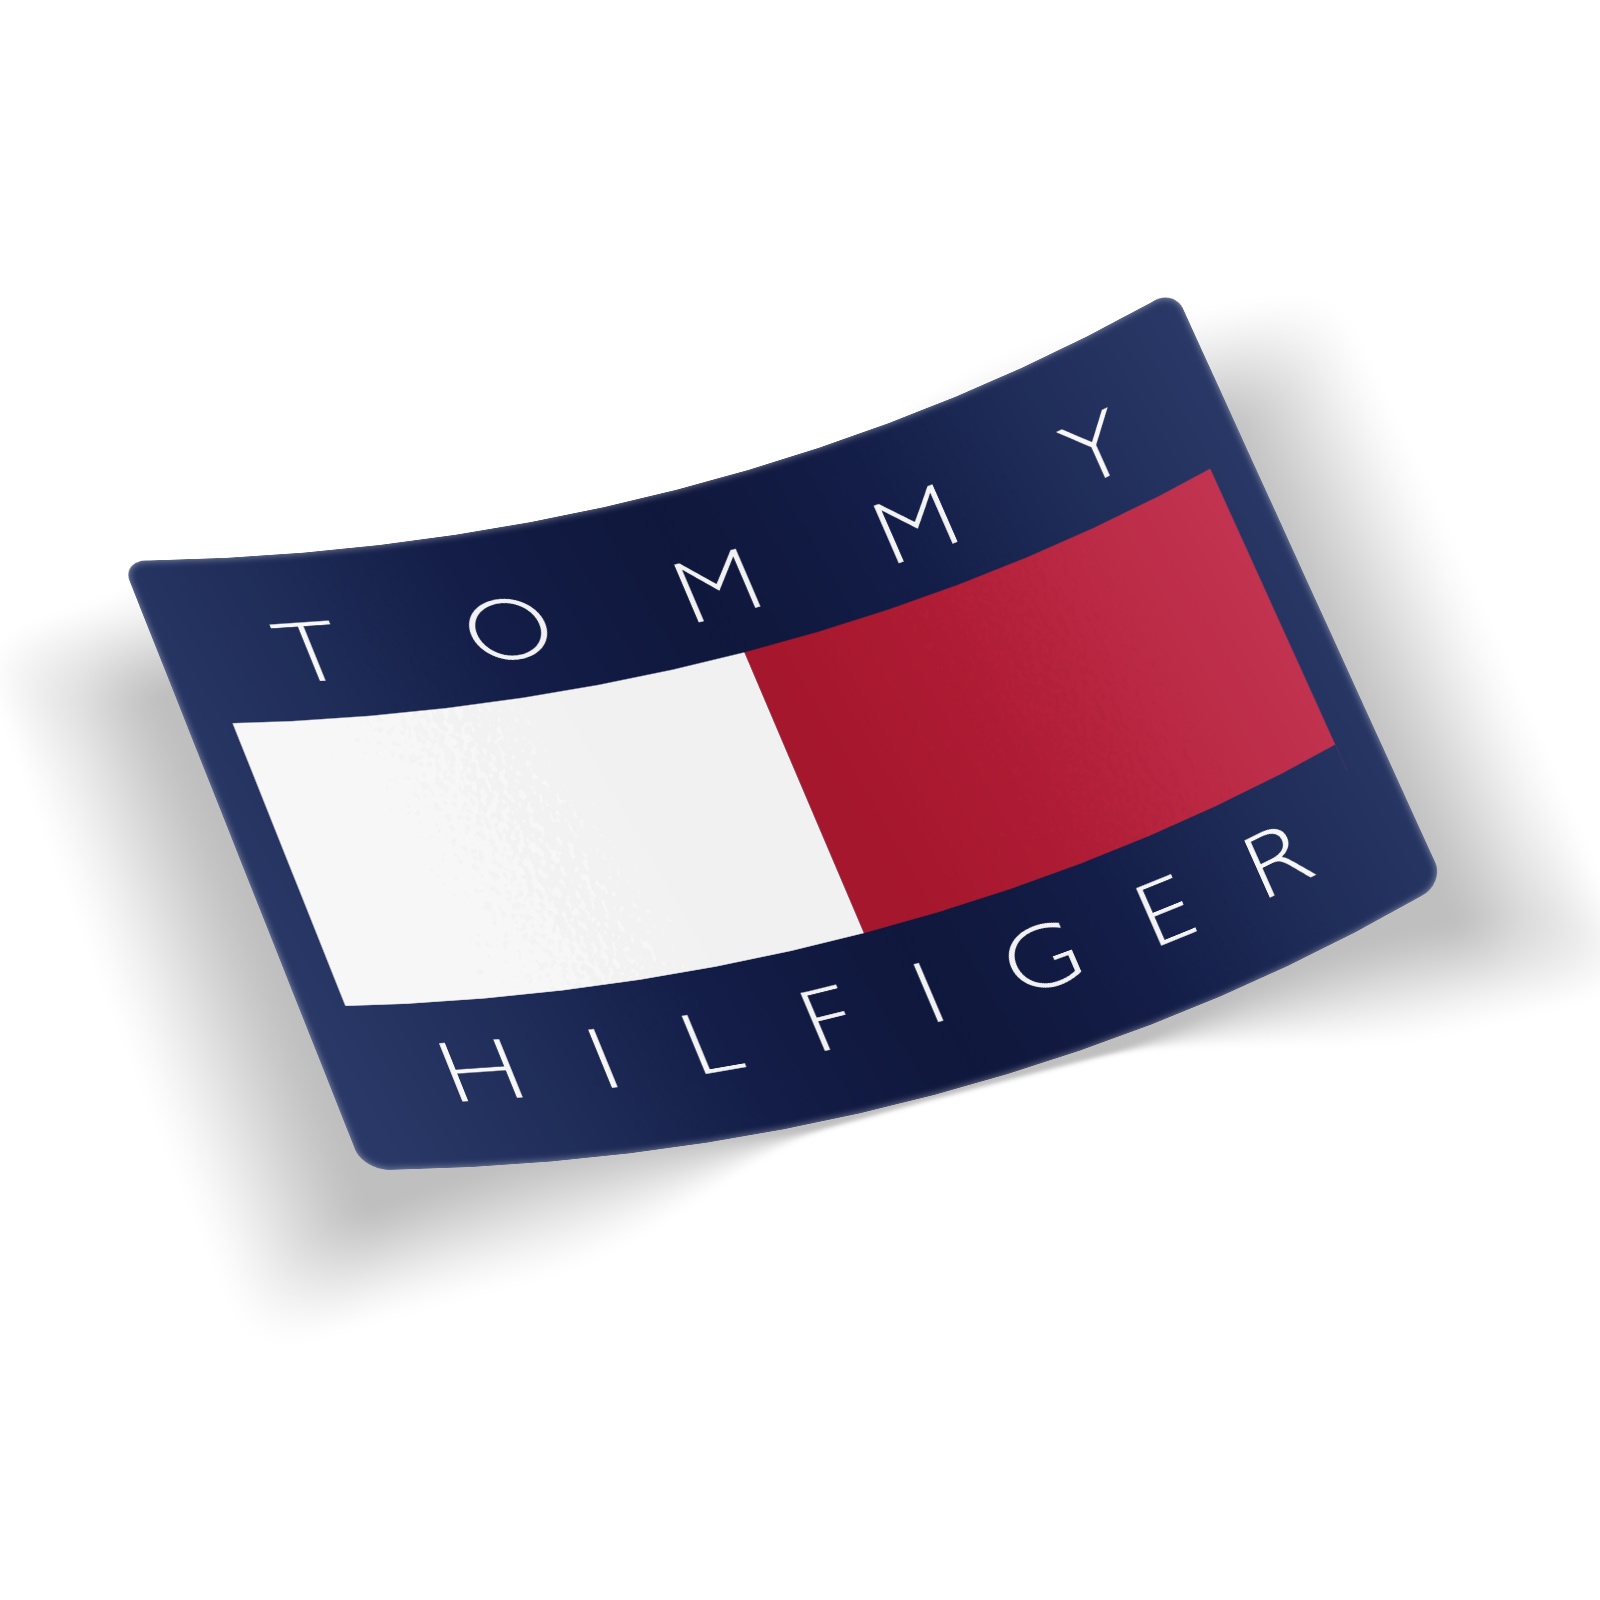 Tommy Hilfiger Интернет Магазин Официальный Сайт